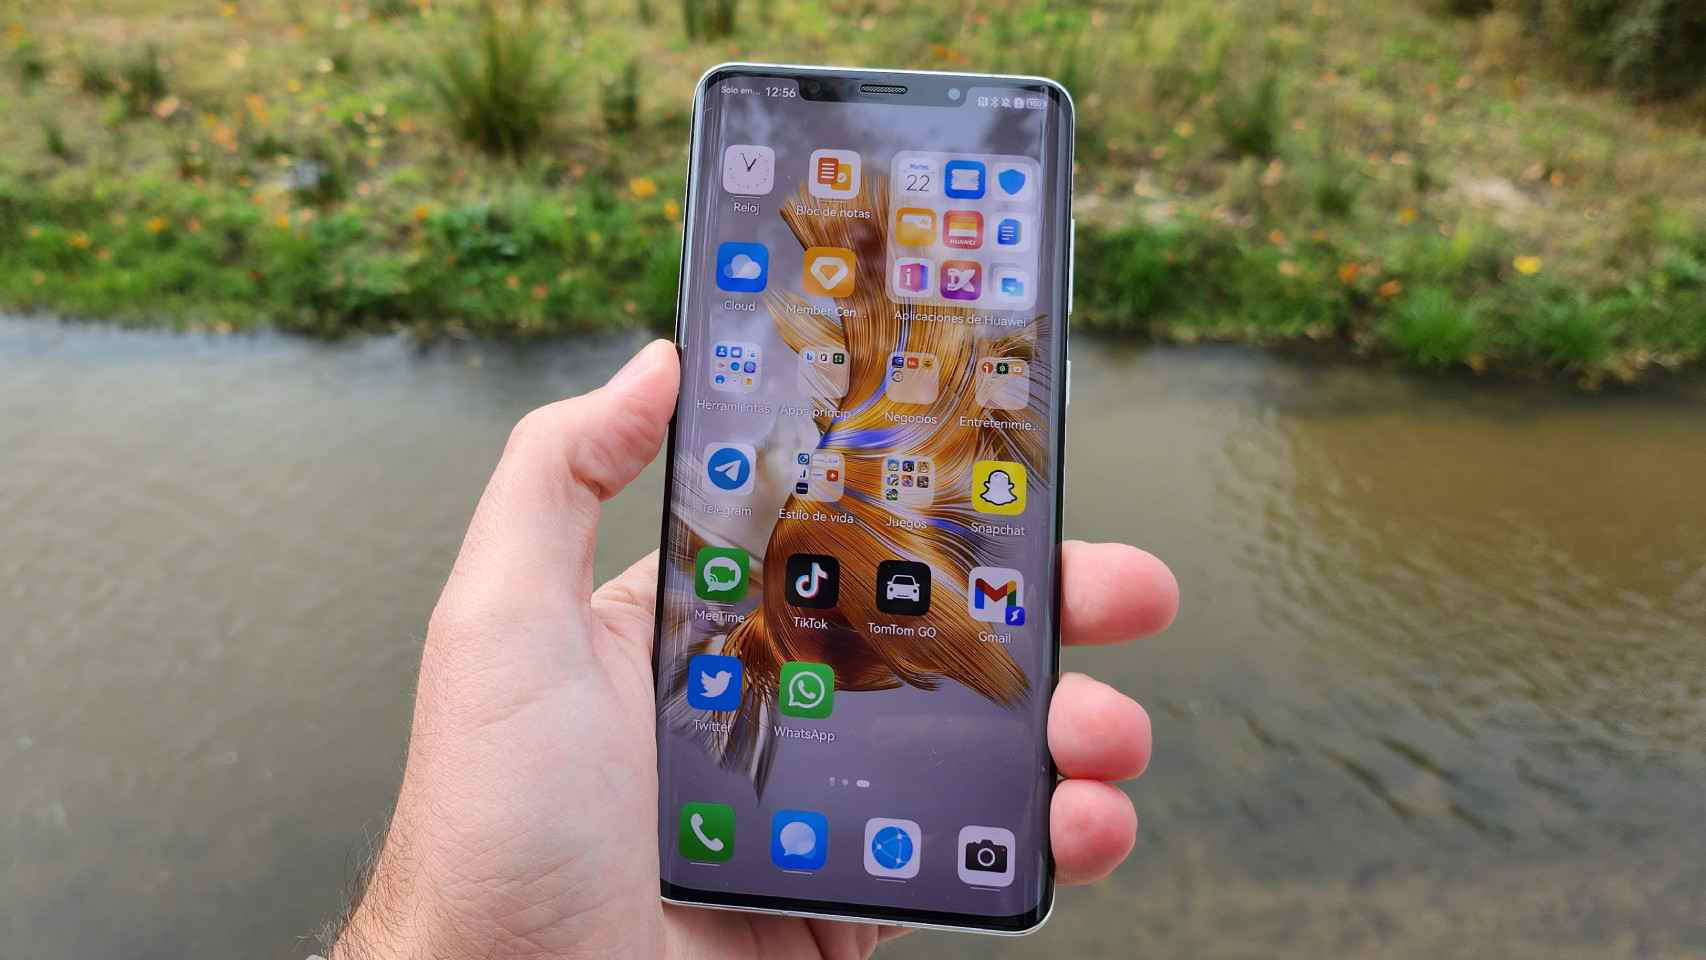 Los móviles Huawei no podrán usar apps de Android: el brutal cambio que se  acerca